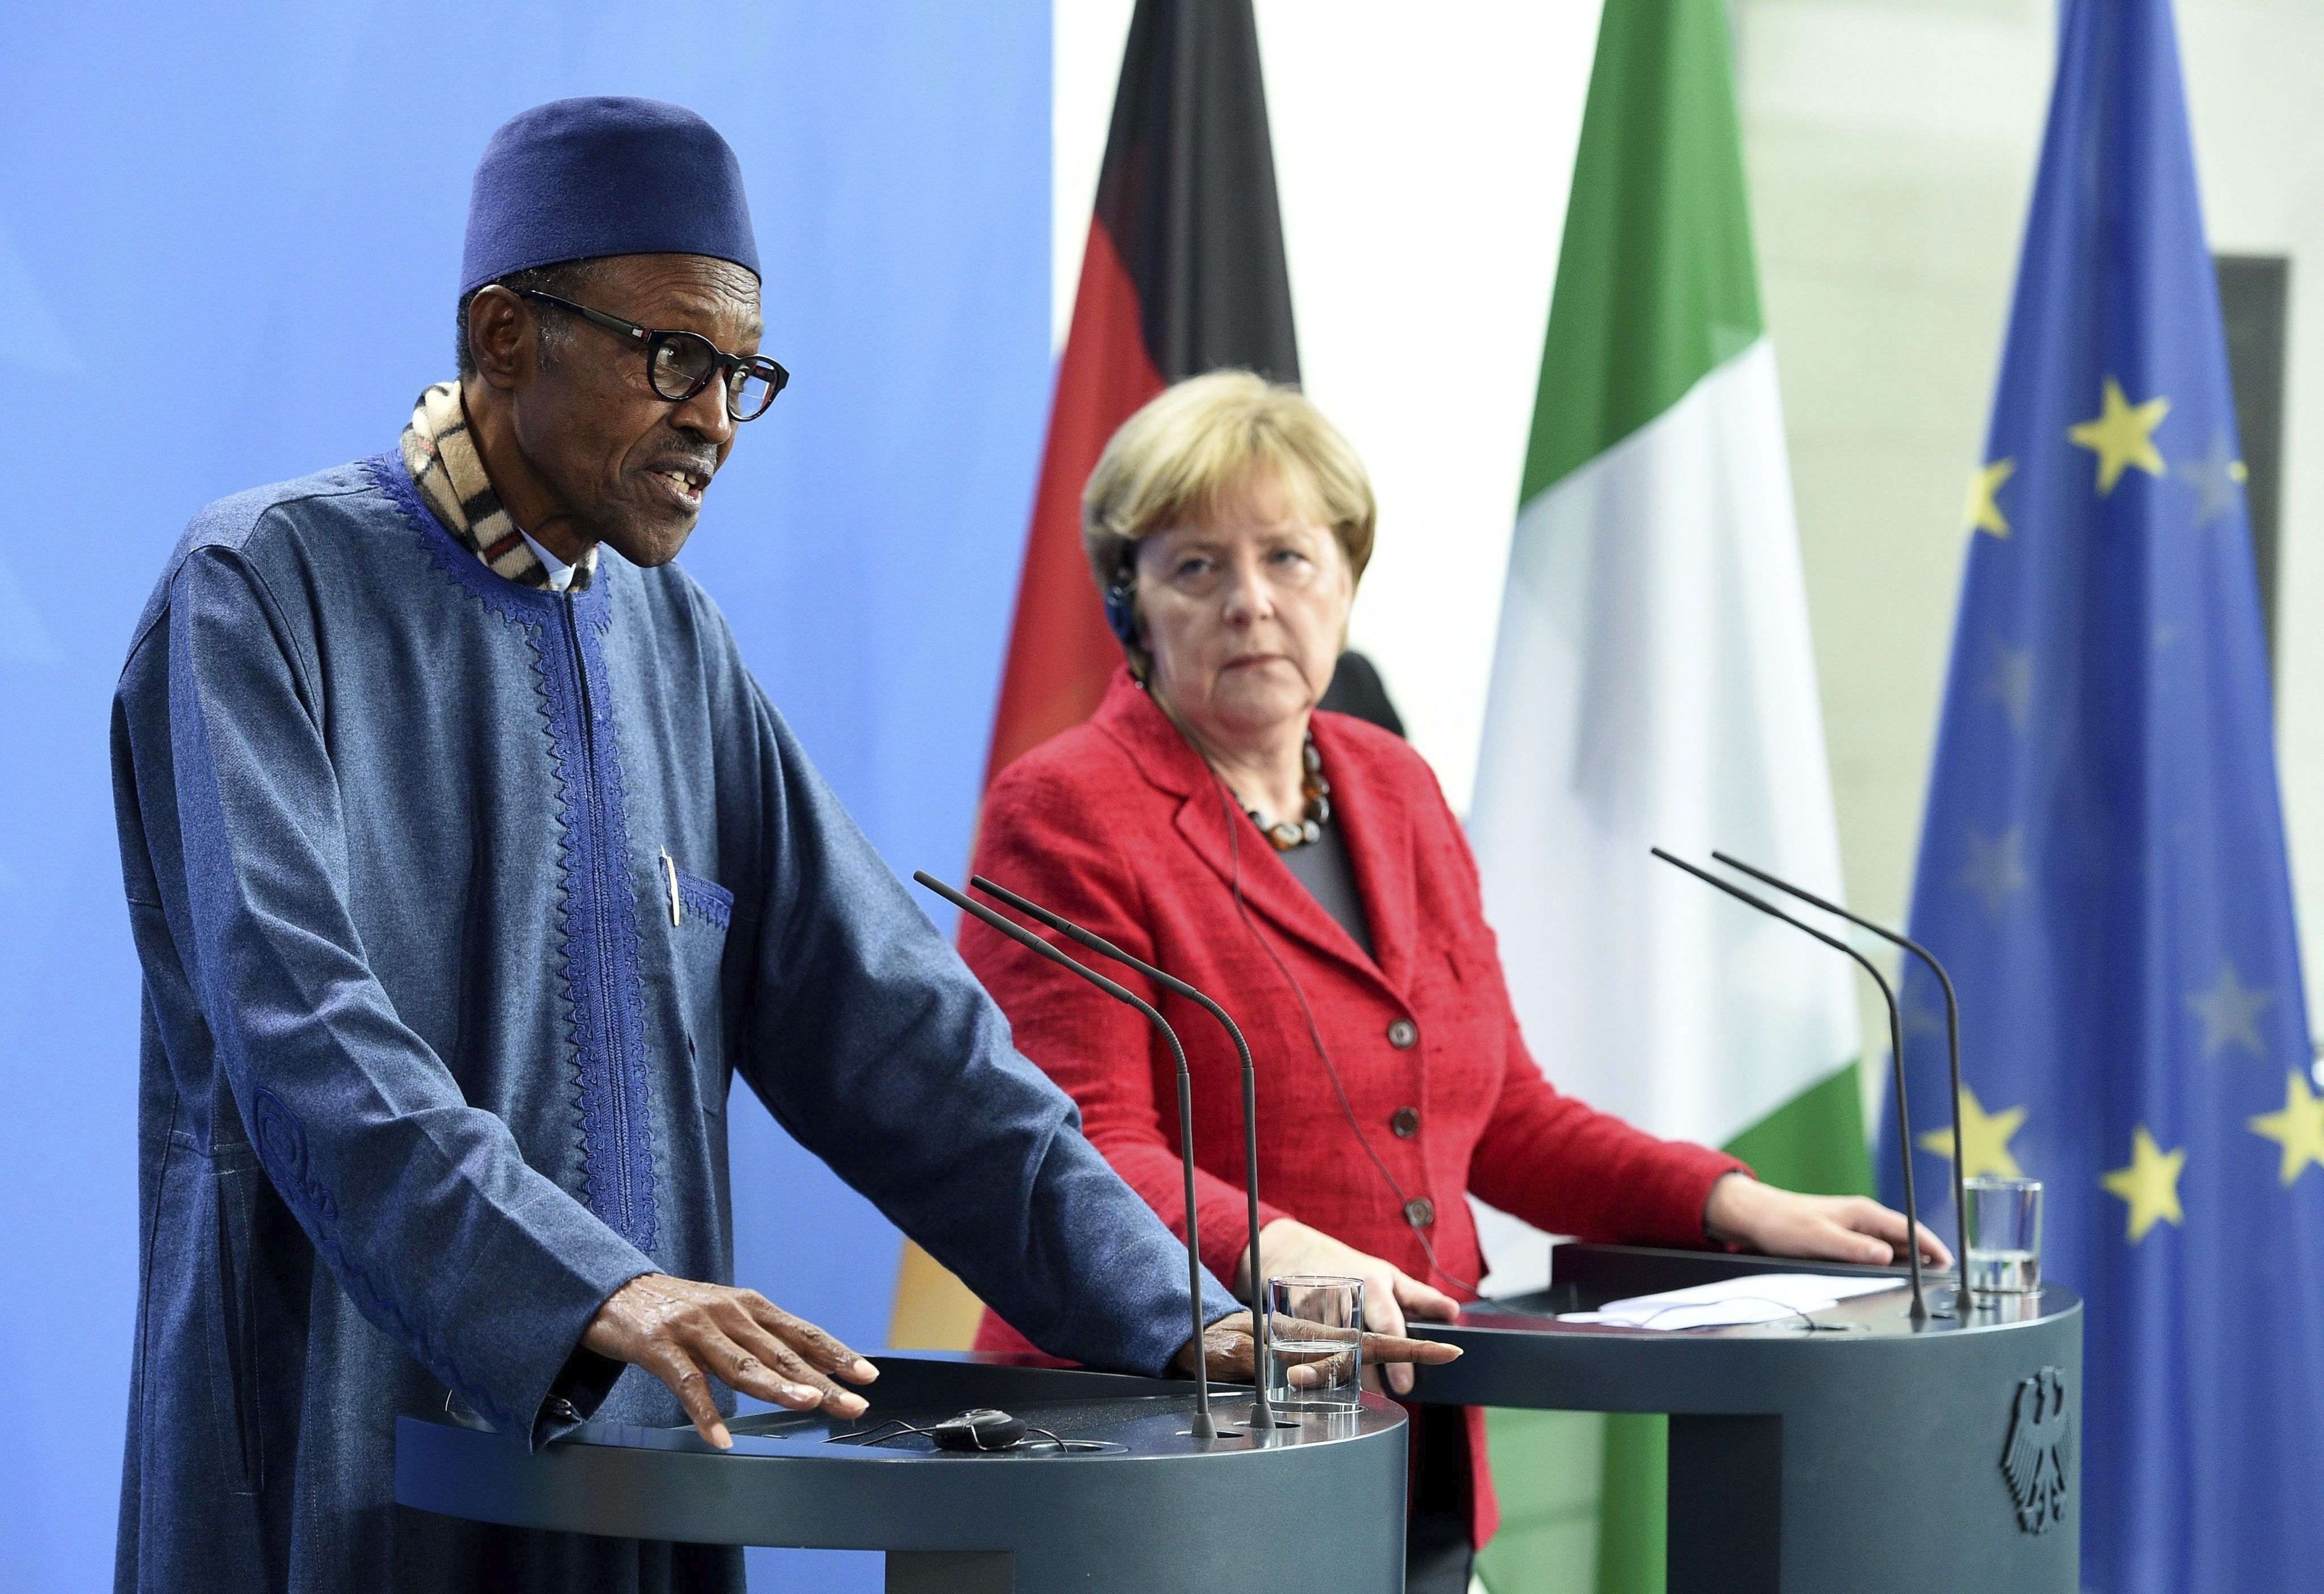 El presidente de Nigeria dice delante de Merkel que el lugar de su mujer "es en la cocina"